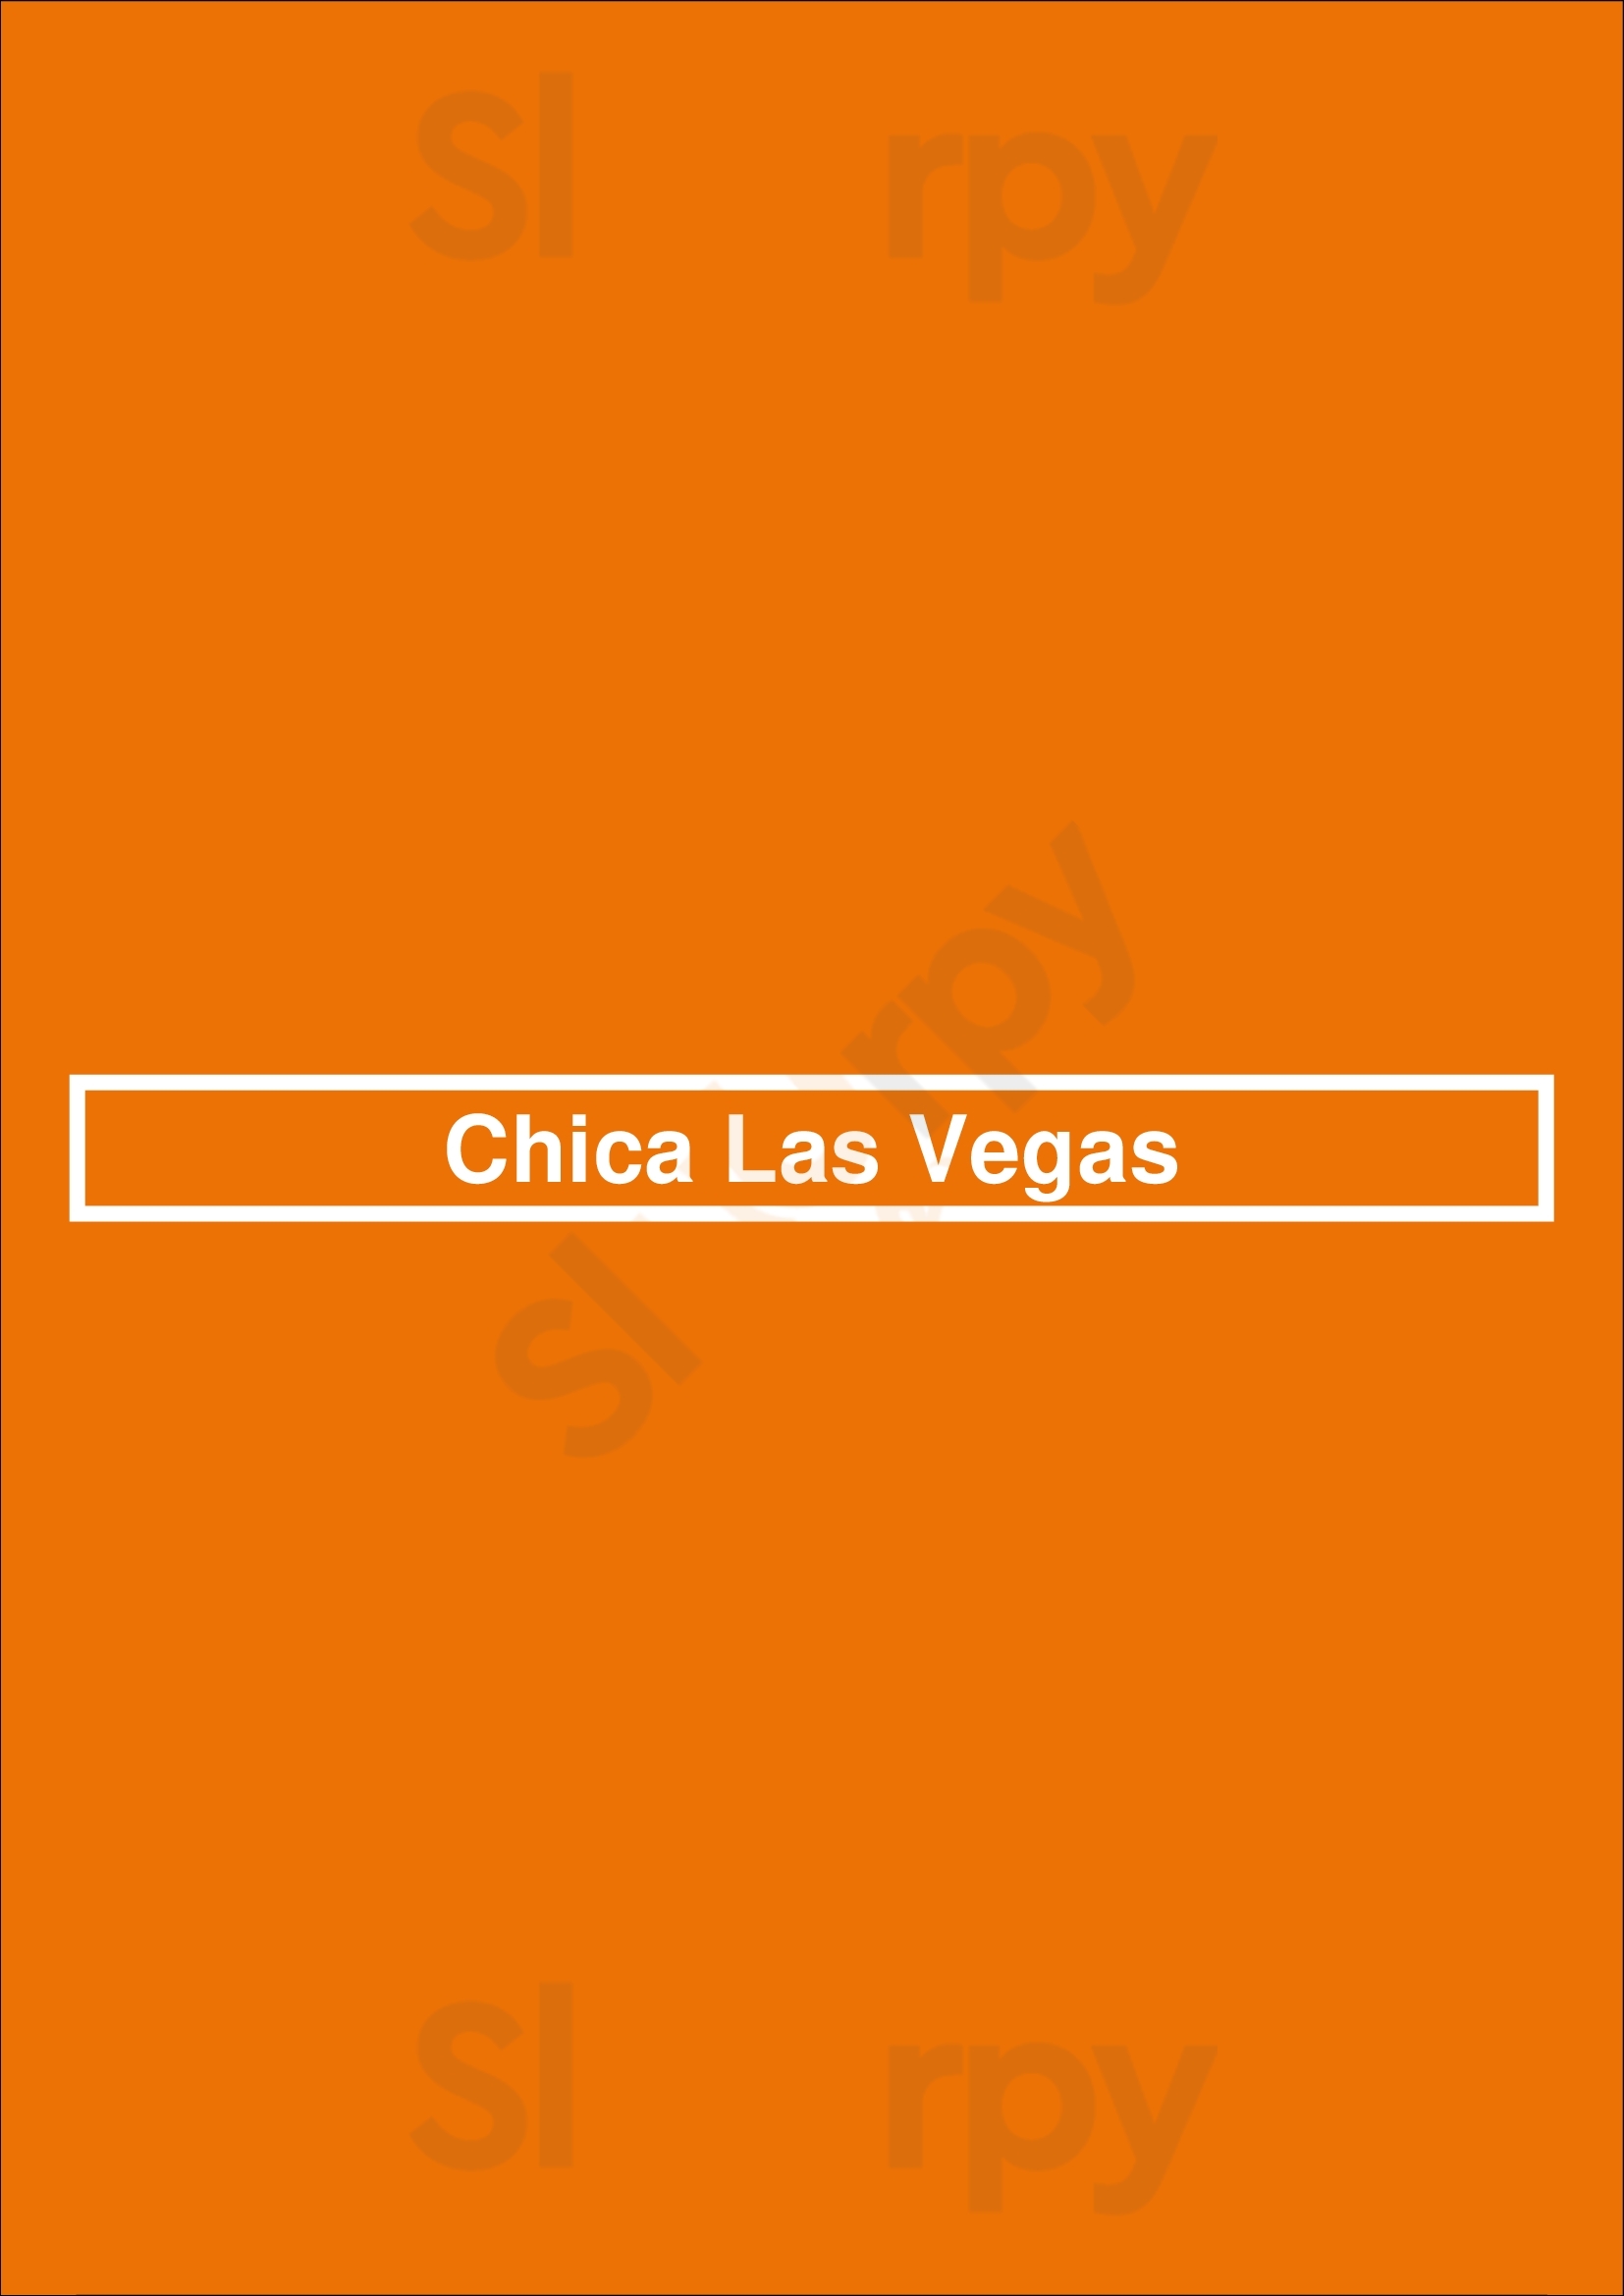 Chica Las Vegas Las Vegas Menu - 1